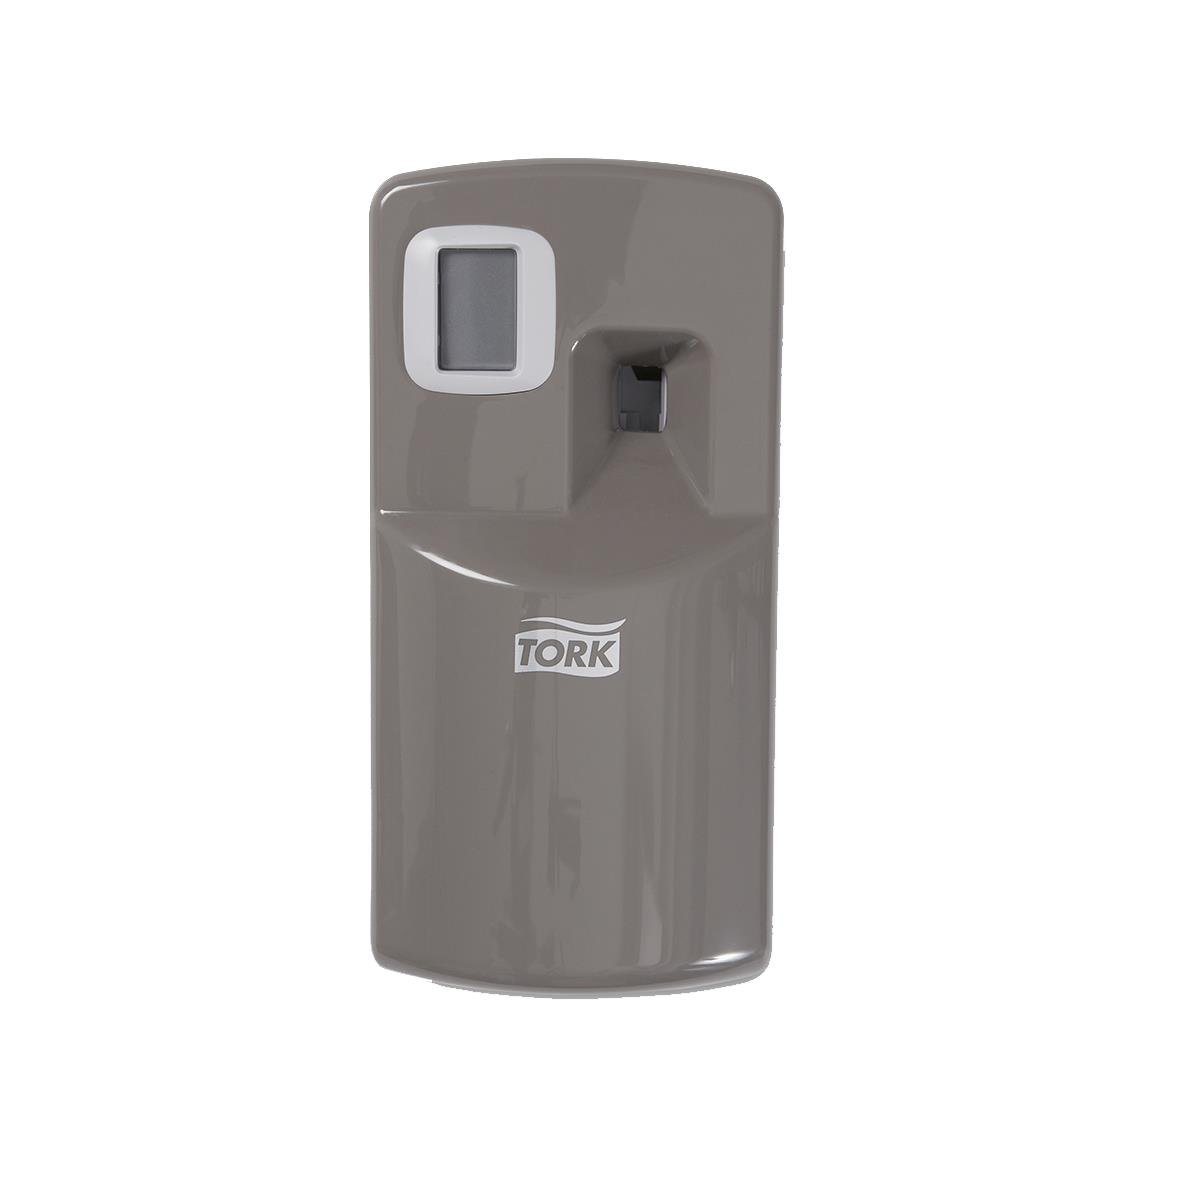 Dispenser Tork A1 Air Freshener plast grå